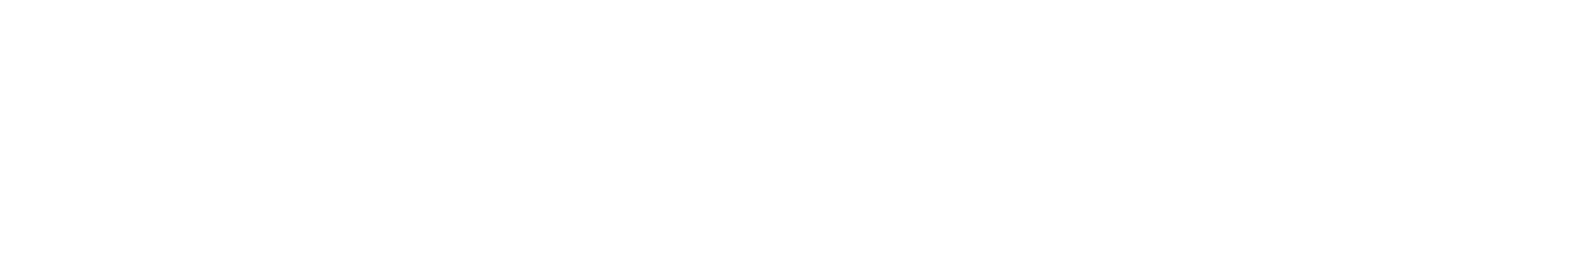 Unum logo grand pour les fonds sombres (PNG transparent)